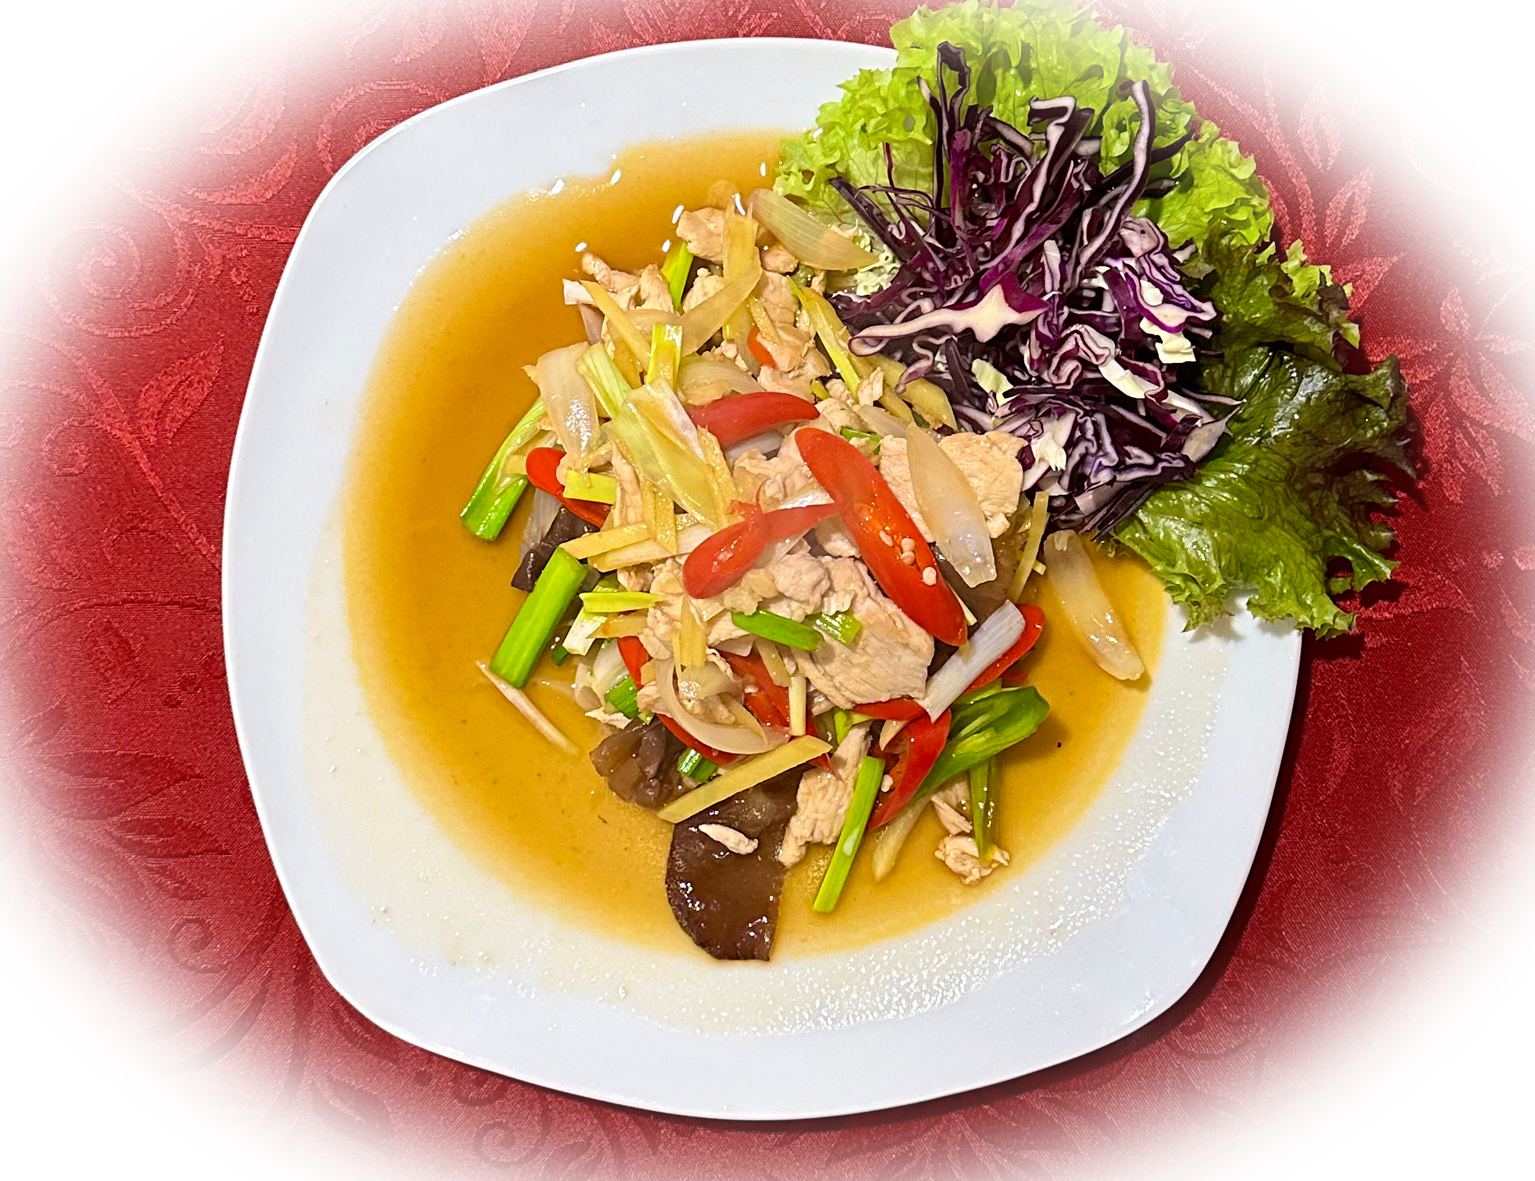 Ein aromatisches thailändisches Wok-Gericht, das zartes Gemüse, würzige Gewürze und Fleisch miteinan